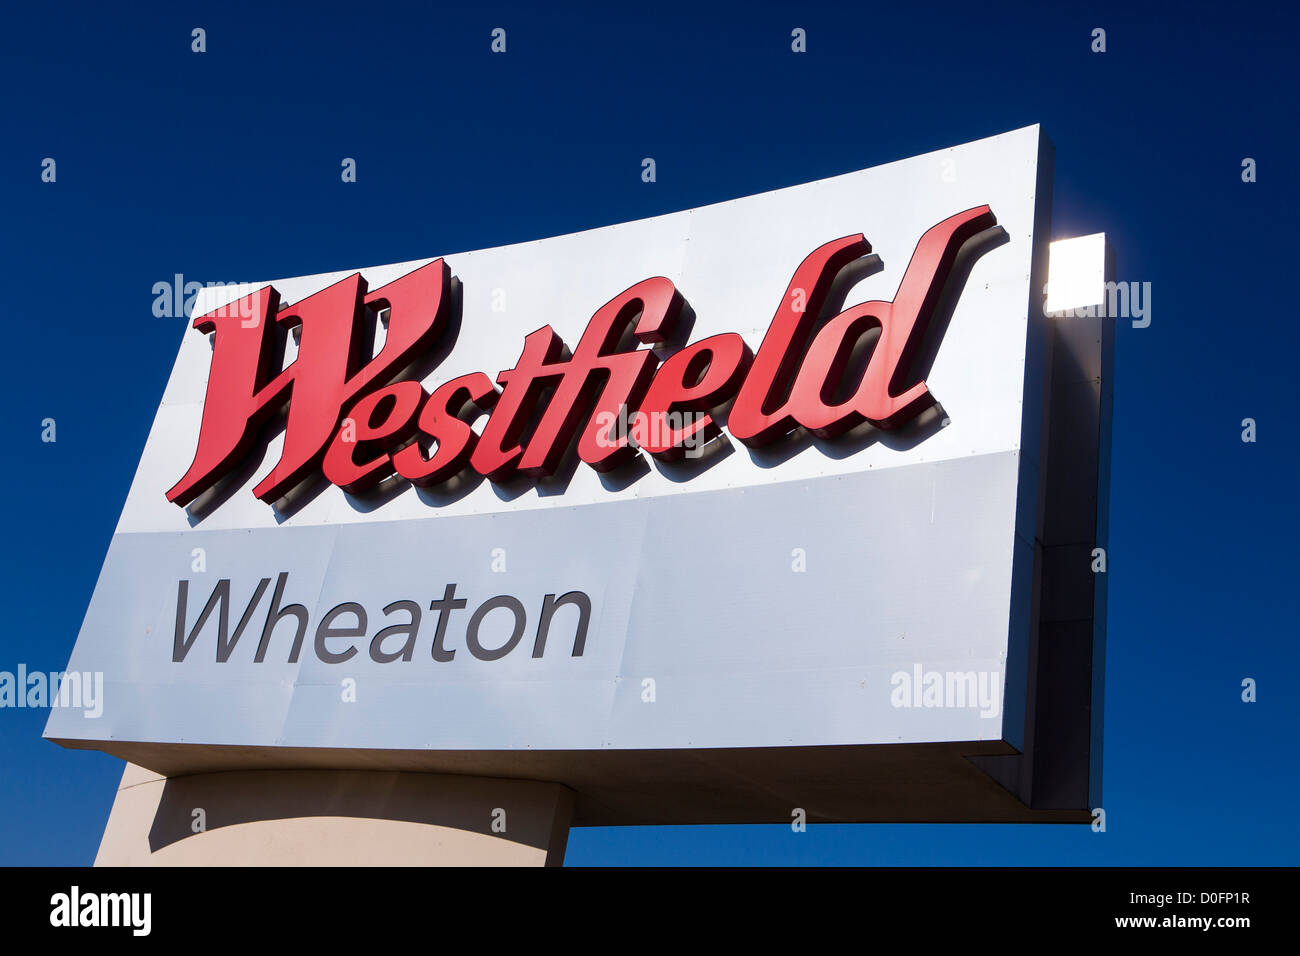 Un centre commercial Westfield signe. Banque D'Images